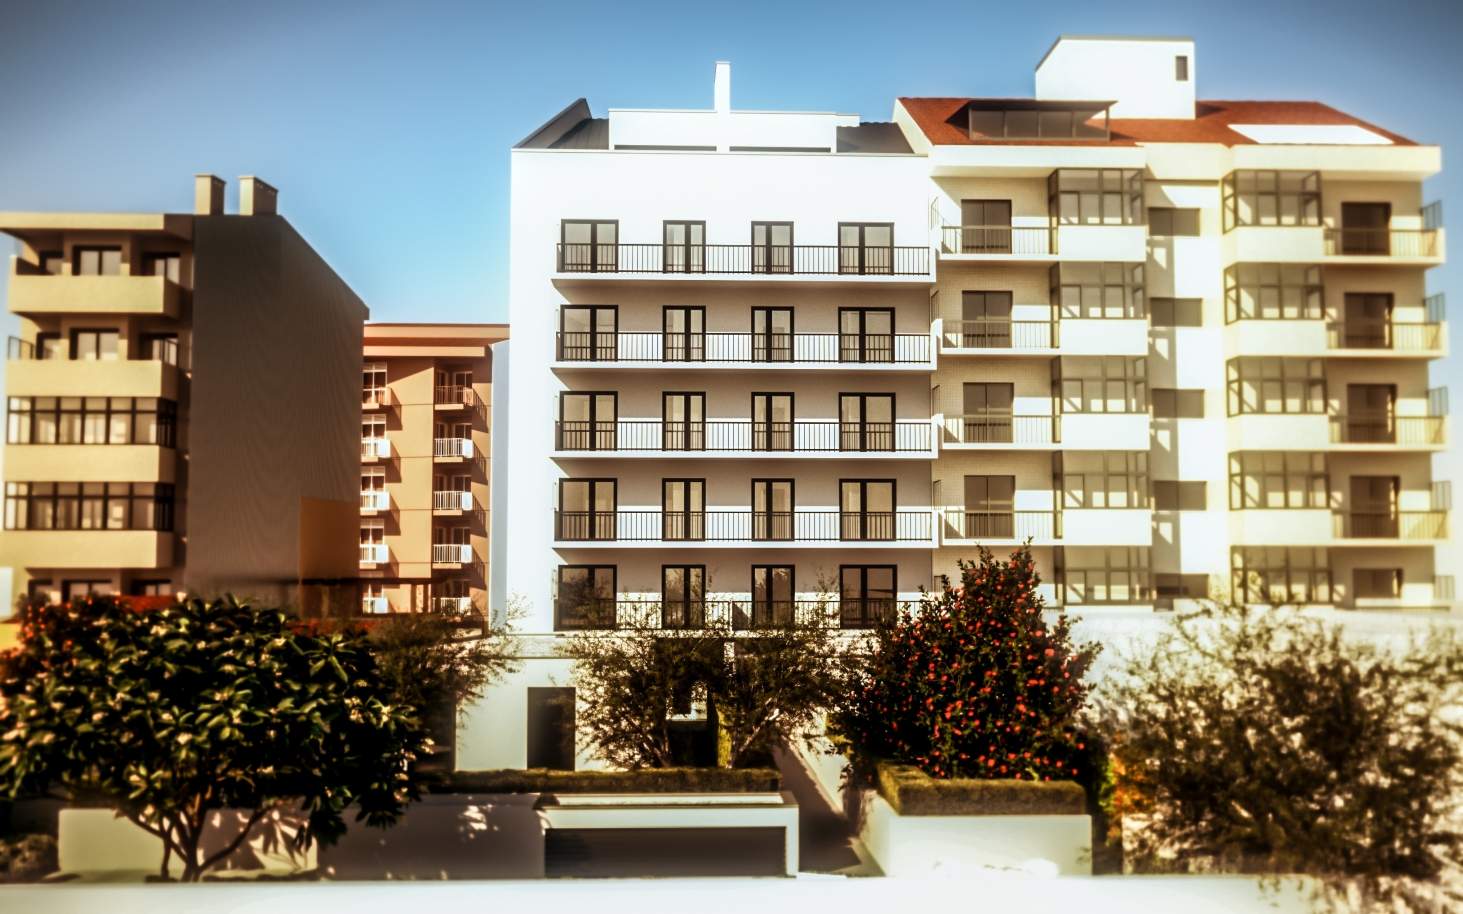 Verkauf von Wohnung in einer neuen Entwicklung, Porto, Portugal_106279